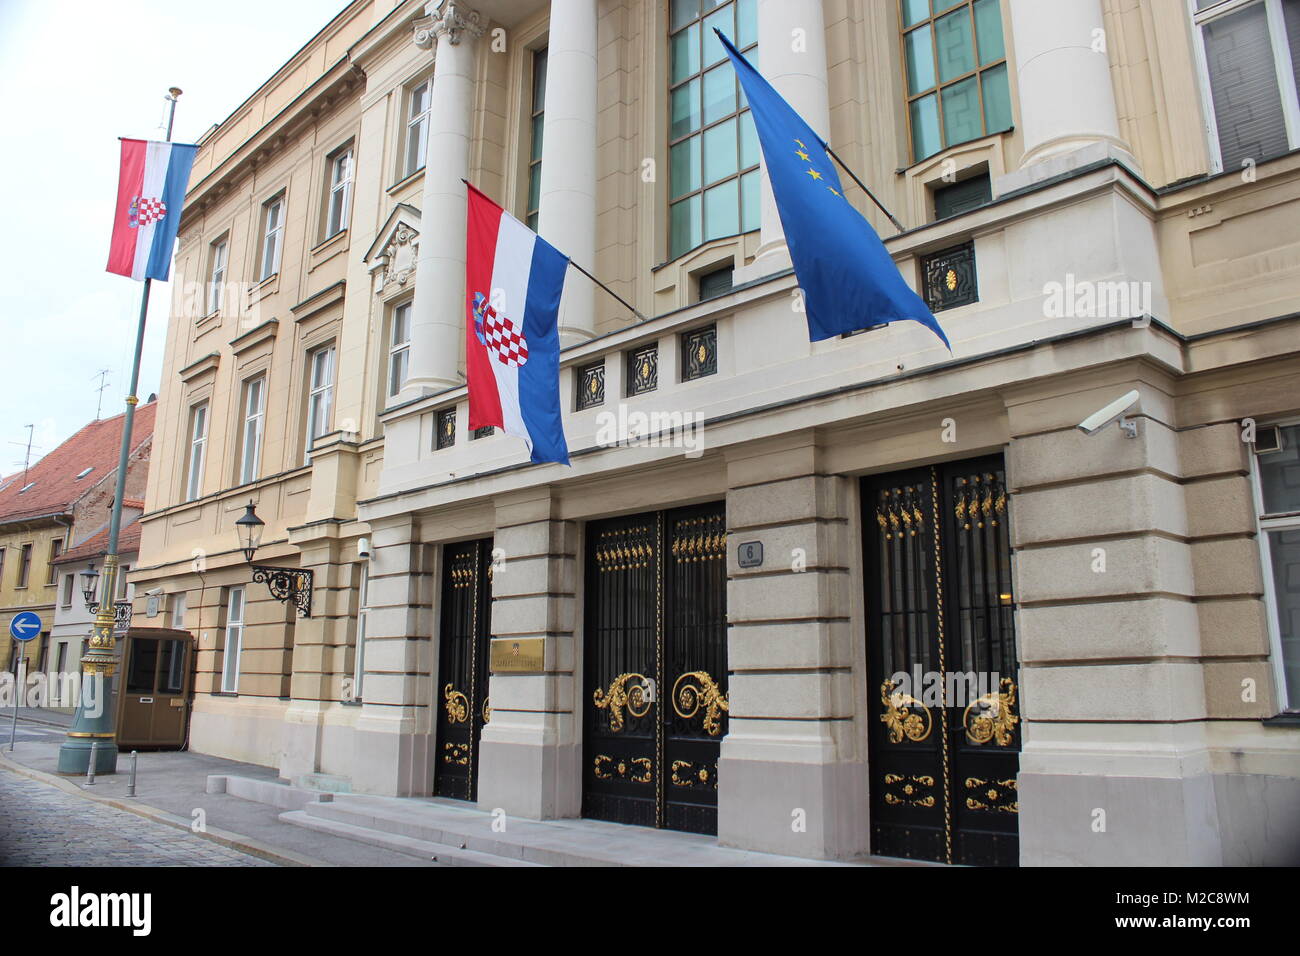 Das Regierungsviertel von Zagreb. Hier weht nun zur Flagge von Kroatien auch die Fahne der Europäischen Union (EU)- EU-Beitritt Kroatien / Croatia / Hravatska zum 1. Juli 2013 Stock Photo